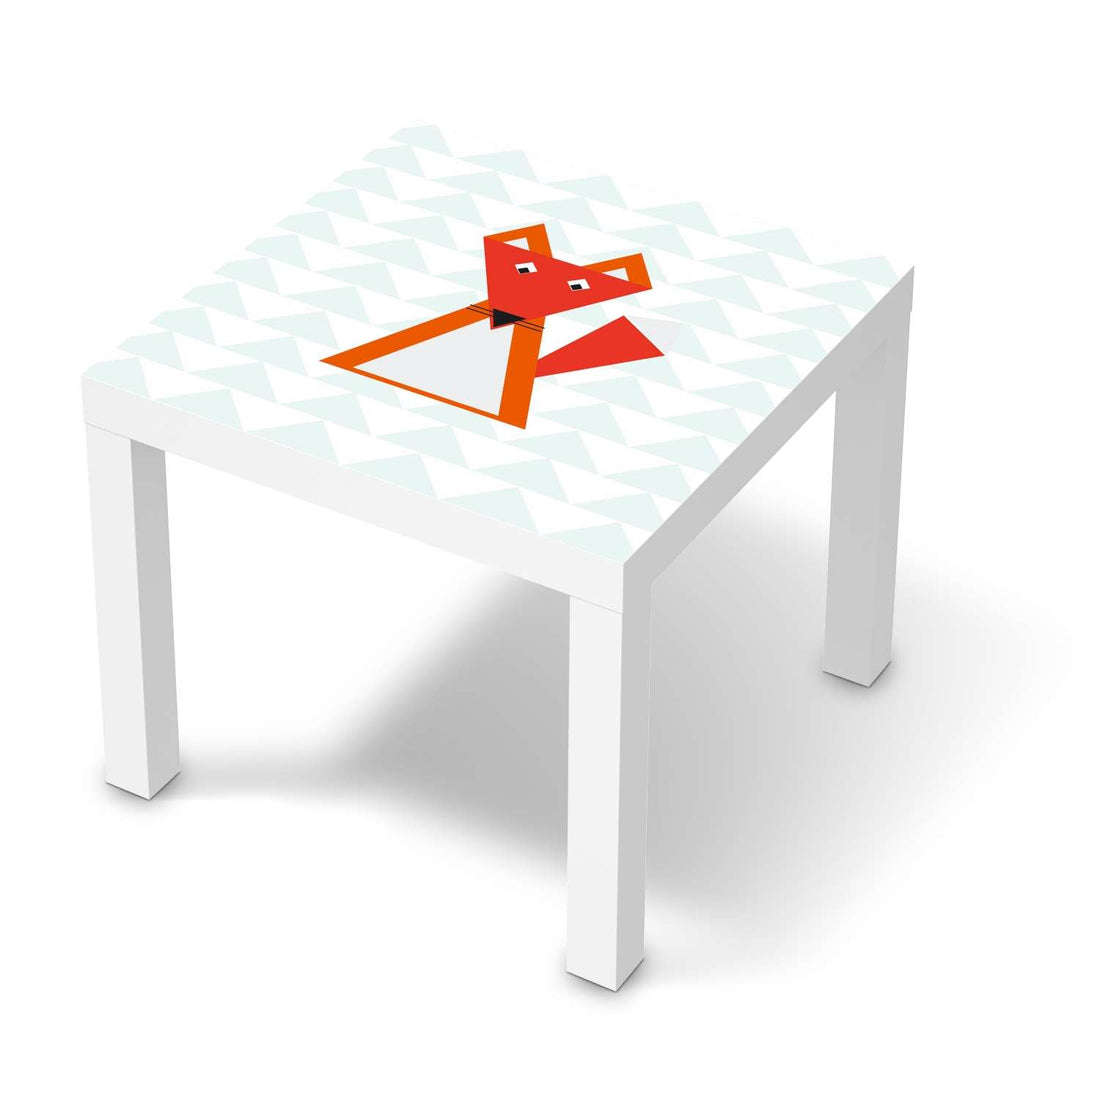 Möbelfolie Füchslein - IKEA Lack Tisch 55x55 cm - weiss